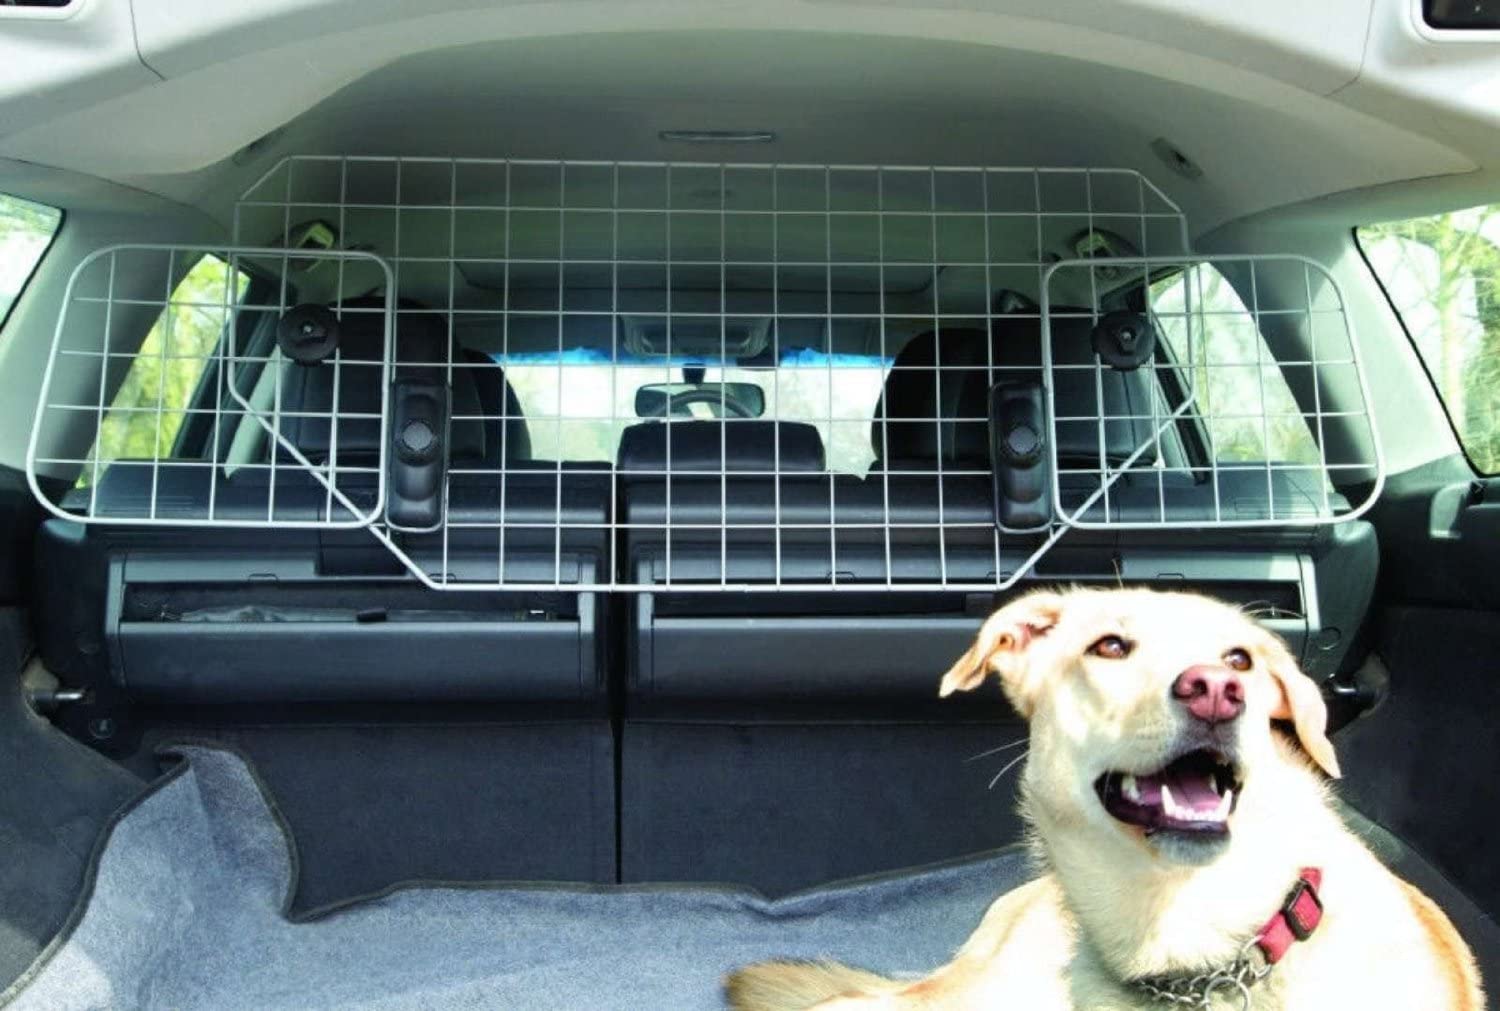  XtremeAuto - Rejilla metálica para transporte de perros en coche, incluye llavero de regalo 